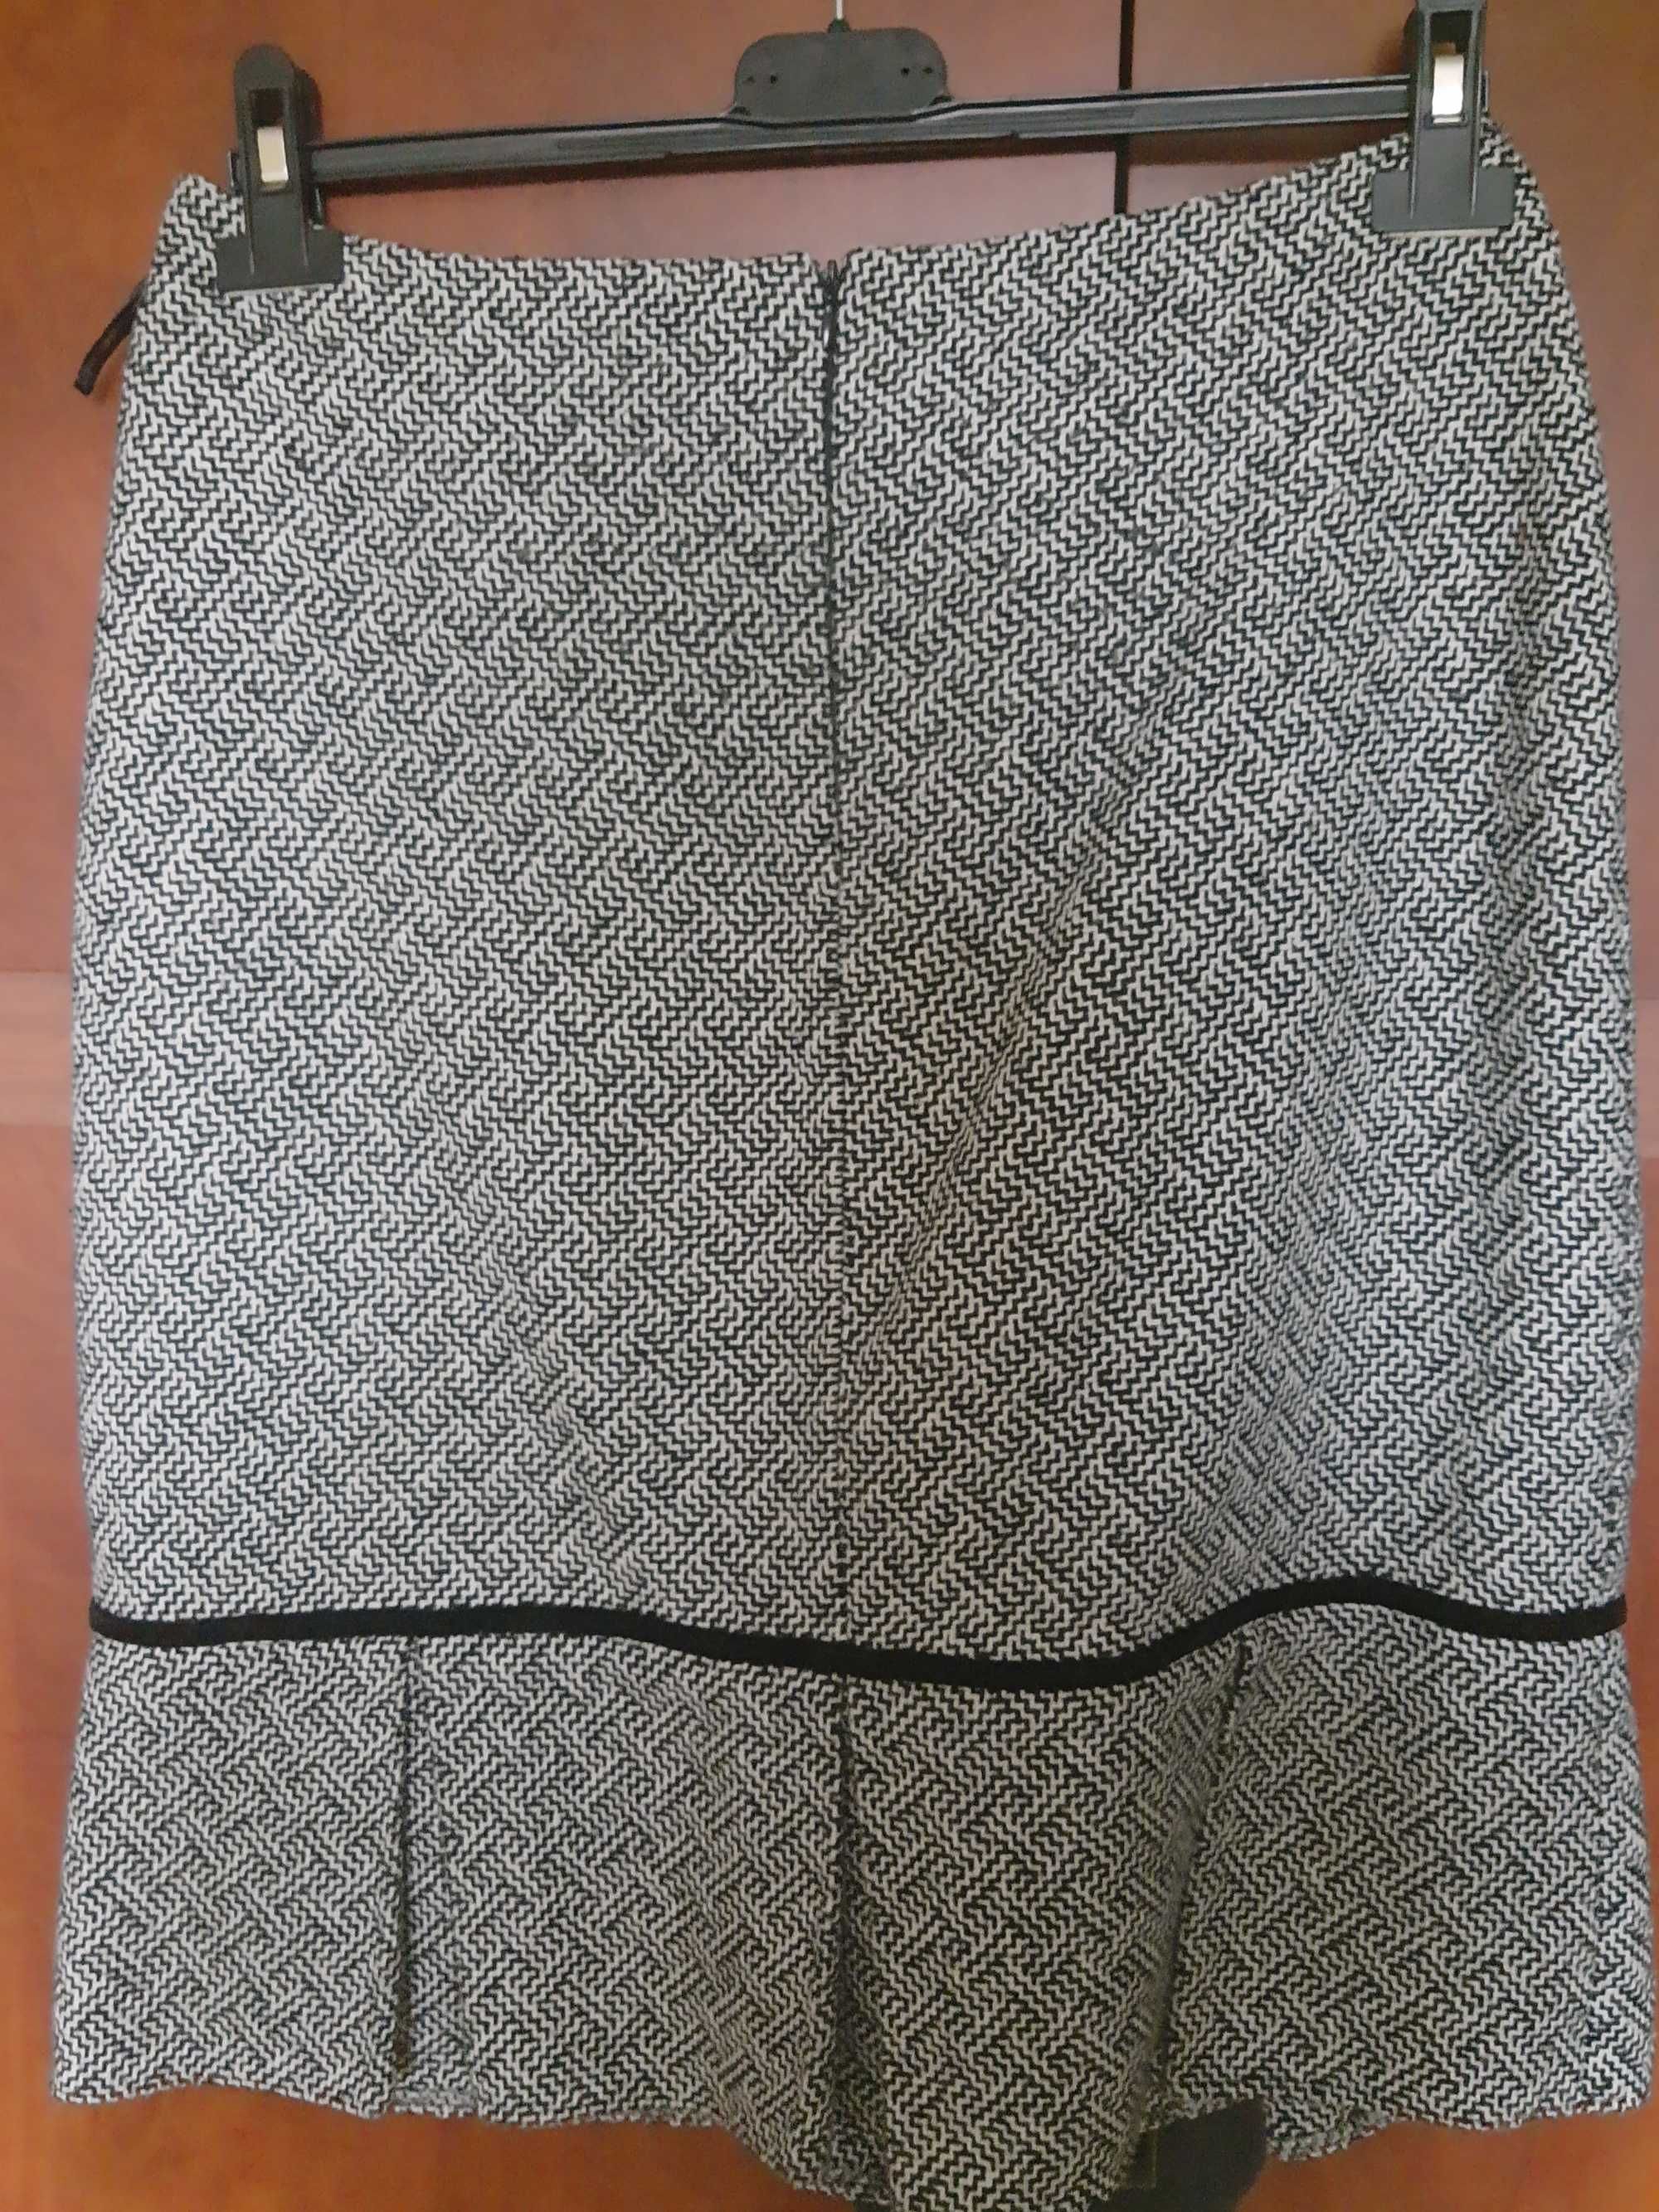 Spódnica ciepła 40-42, z podszewką, wzór jodełka, plisy, oryg. fason